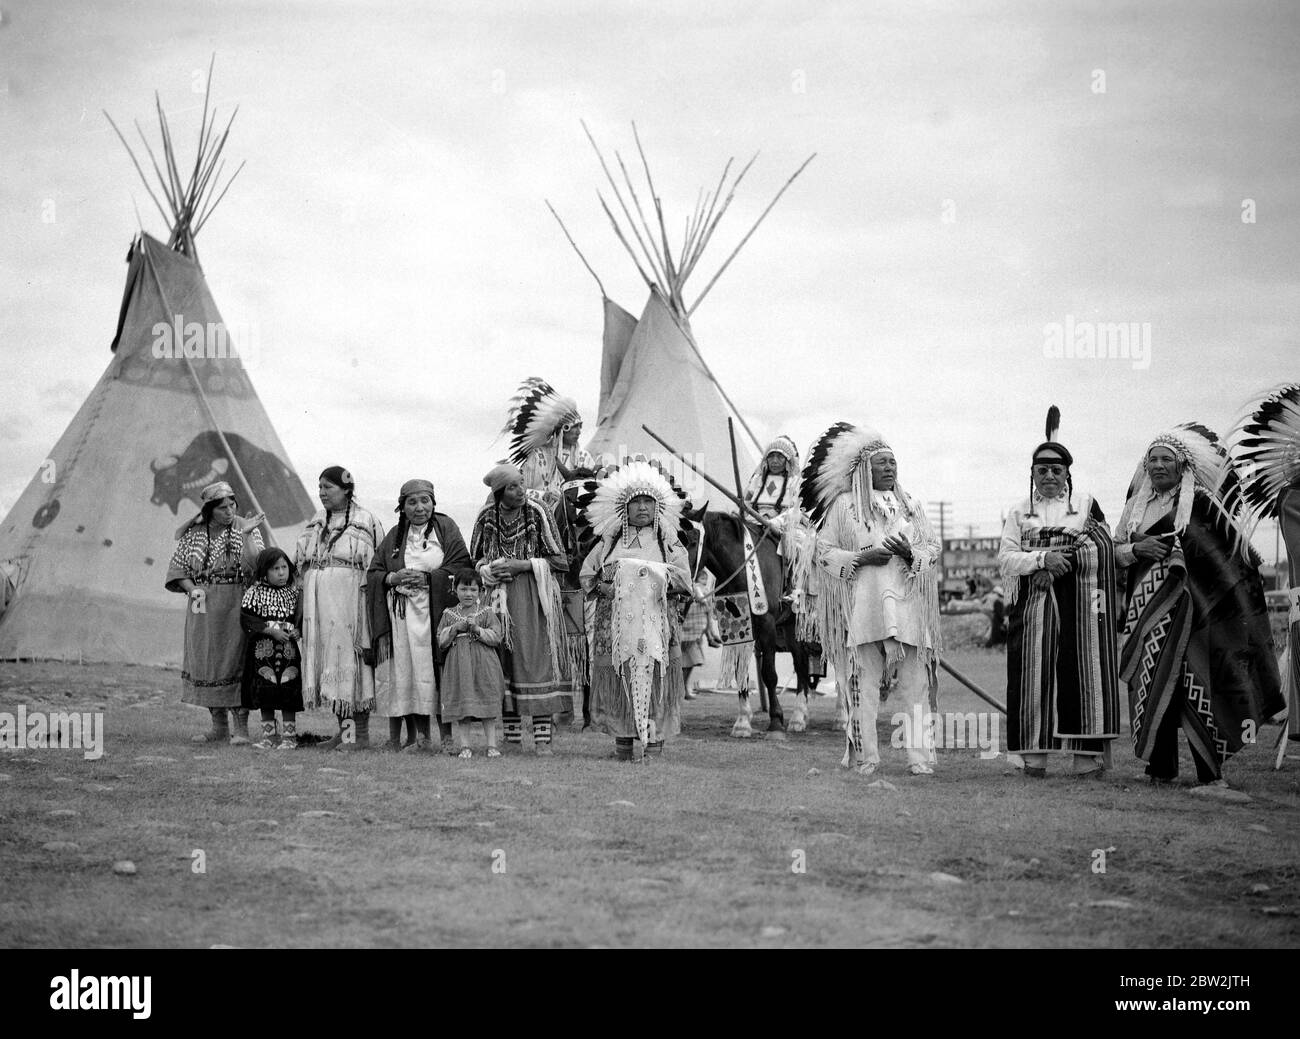 La tournée royale du Canada et des États-Unis par le roi George VI et la reine Elizabeth , 1939 Indiens à l'extérieur de leurs wigwams qui attendent d'accueillir le roi et la reine à Calgary (Alberta) . Banque D'Images